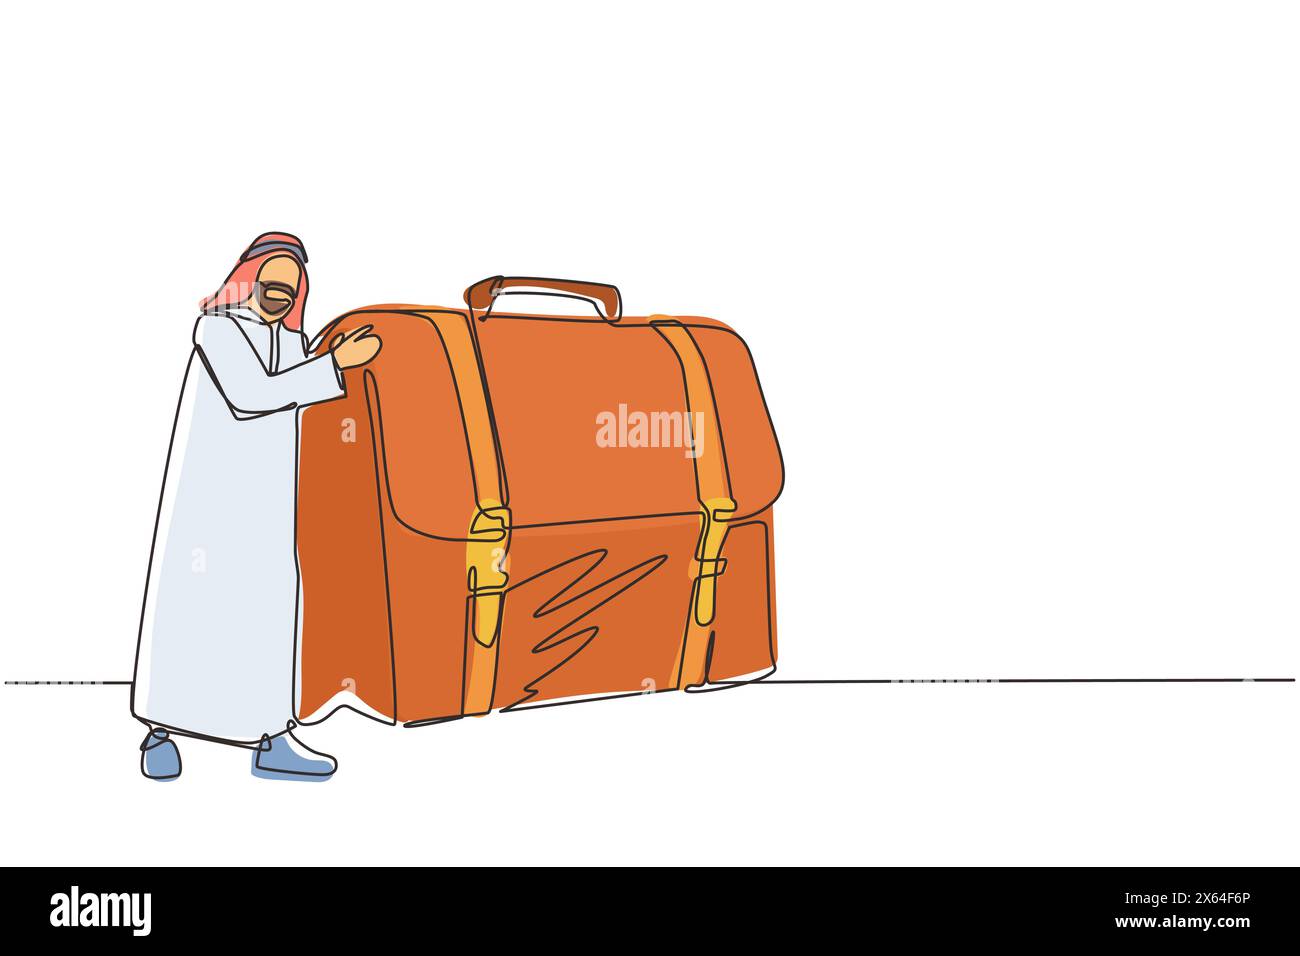 Una sola linea che disegna un gioioso uomo d'affari arabo abbraccia la valigia con i soldi. Capo e caso con soldi. Obiettivo di successo per i viaggi d'affari. Moderno Illustrazione Vettoriale